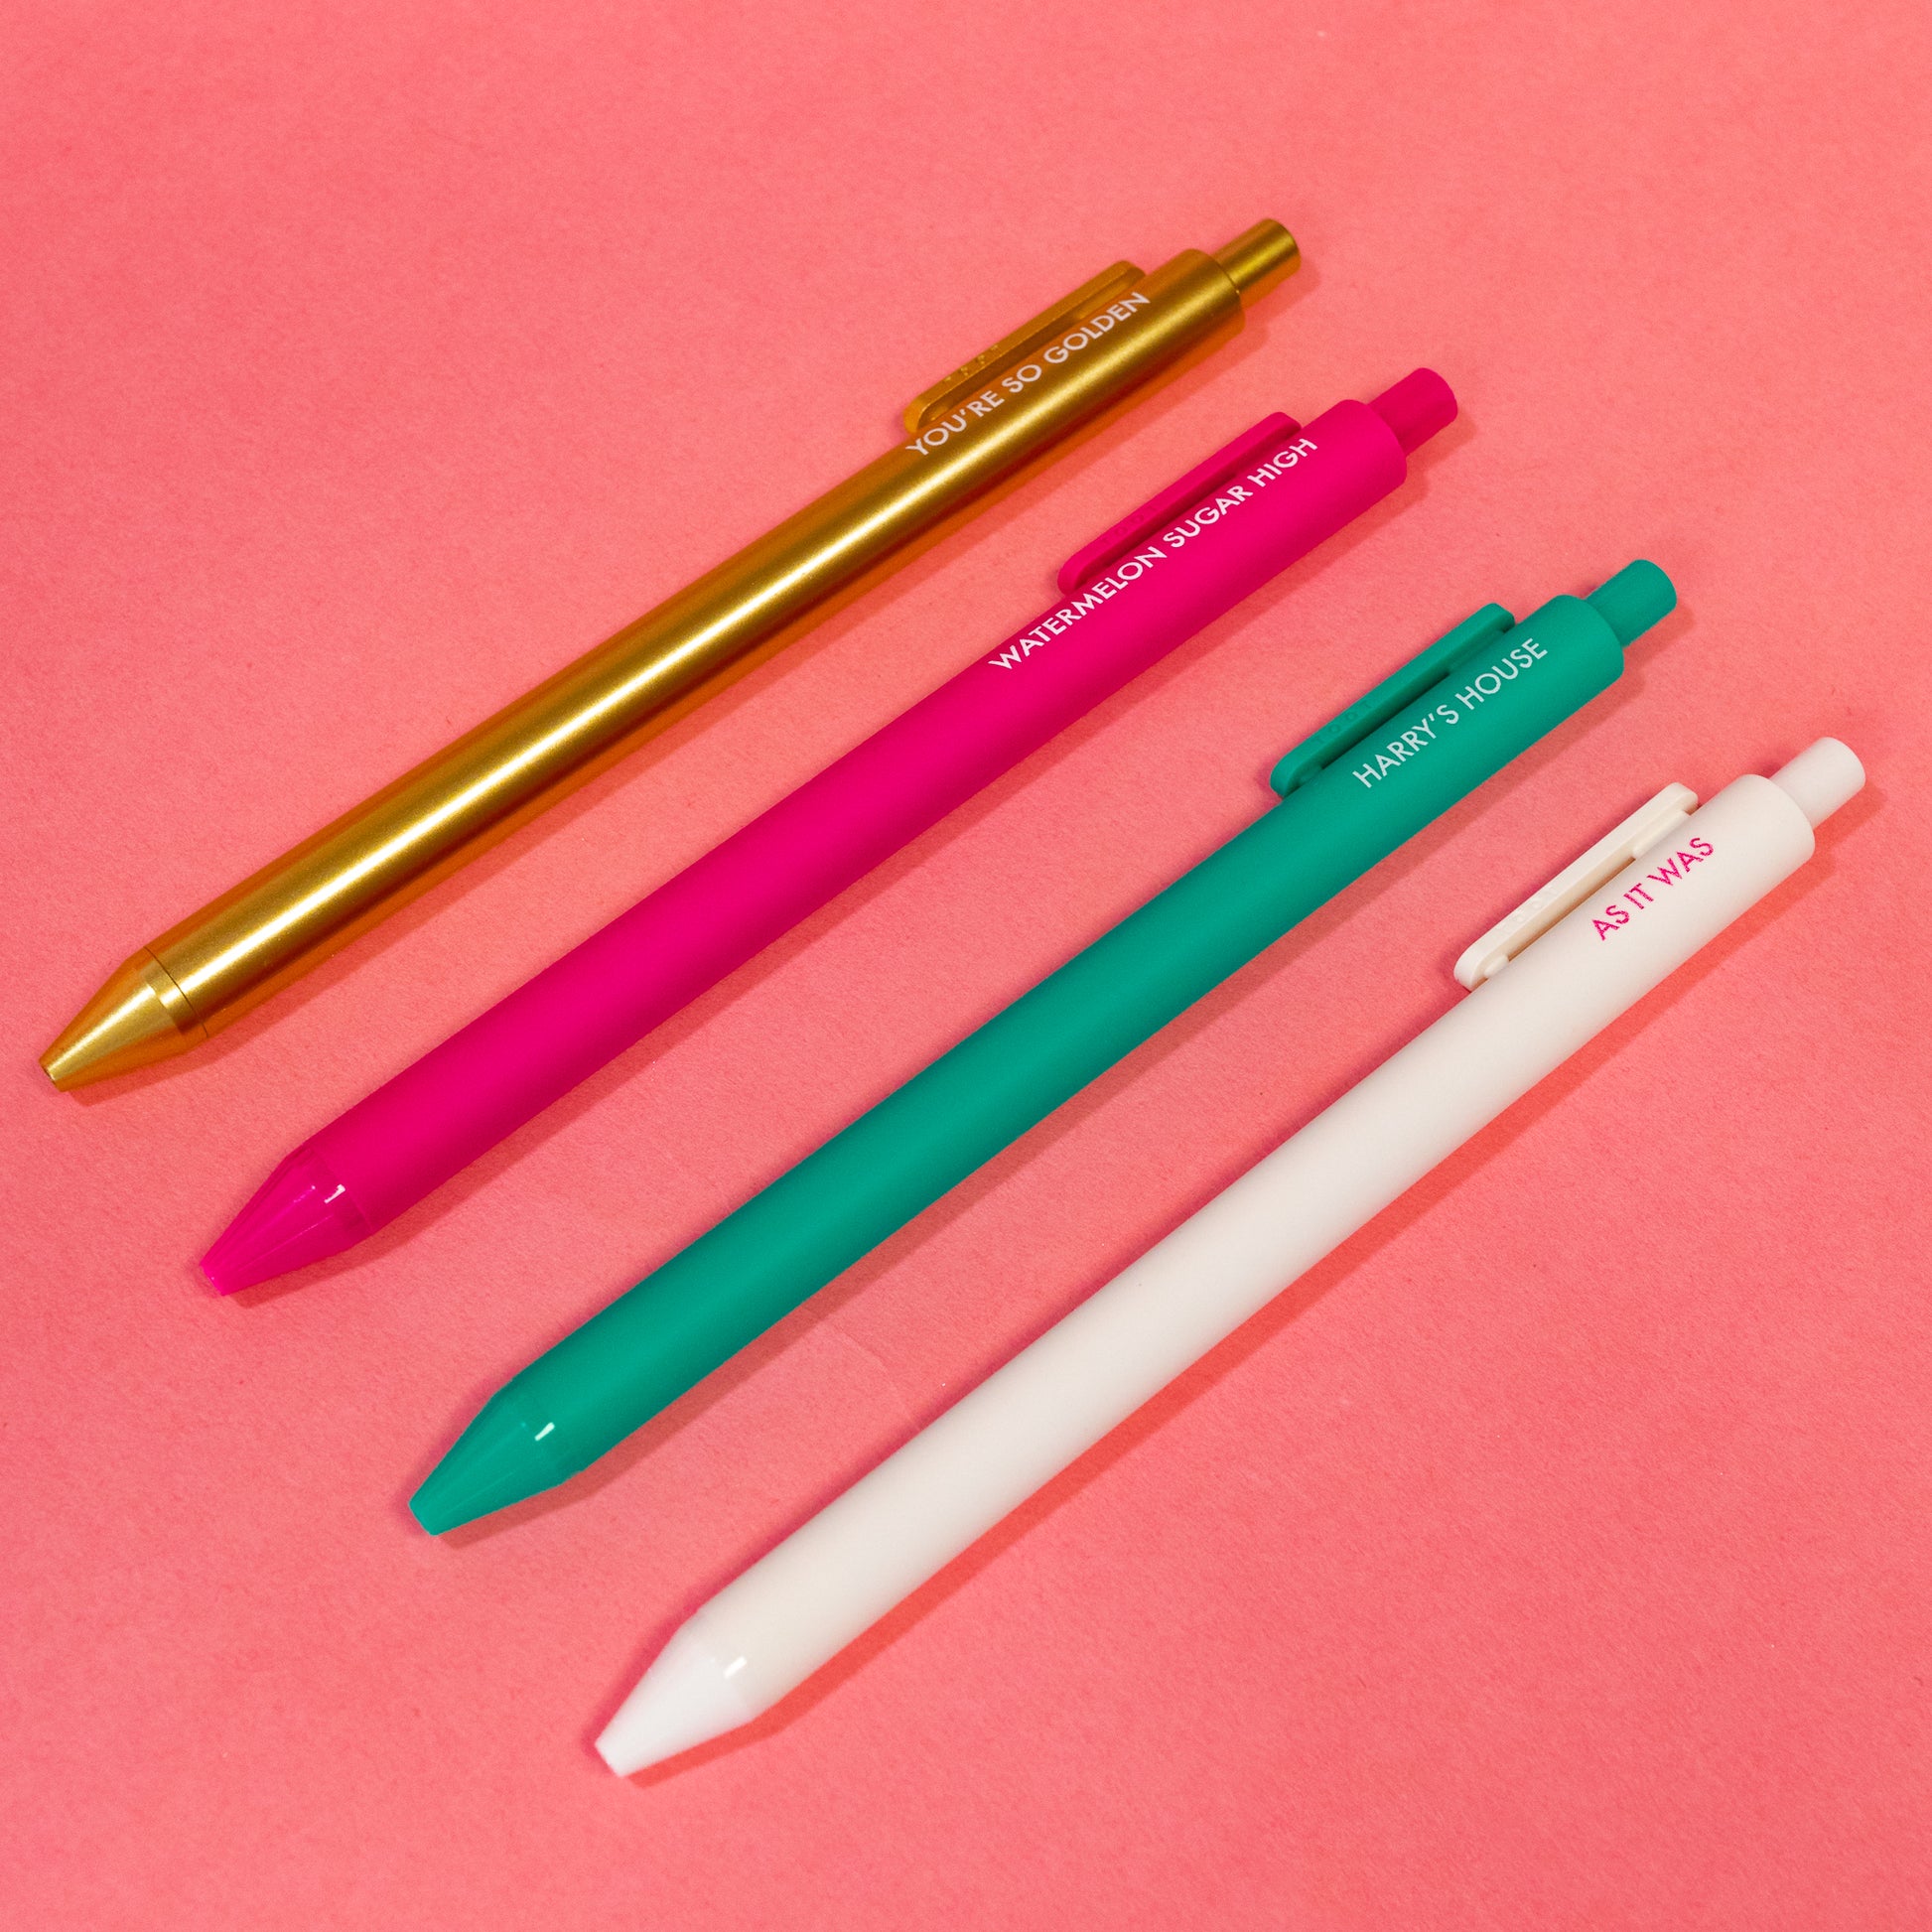 four colorful gel pens